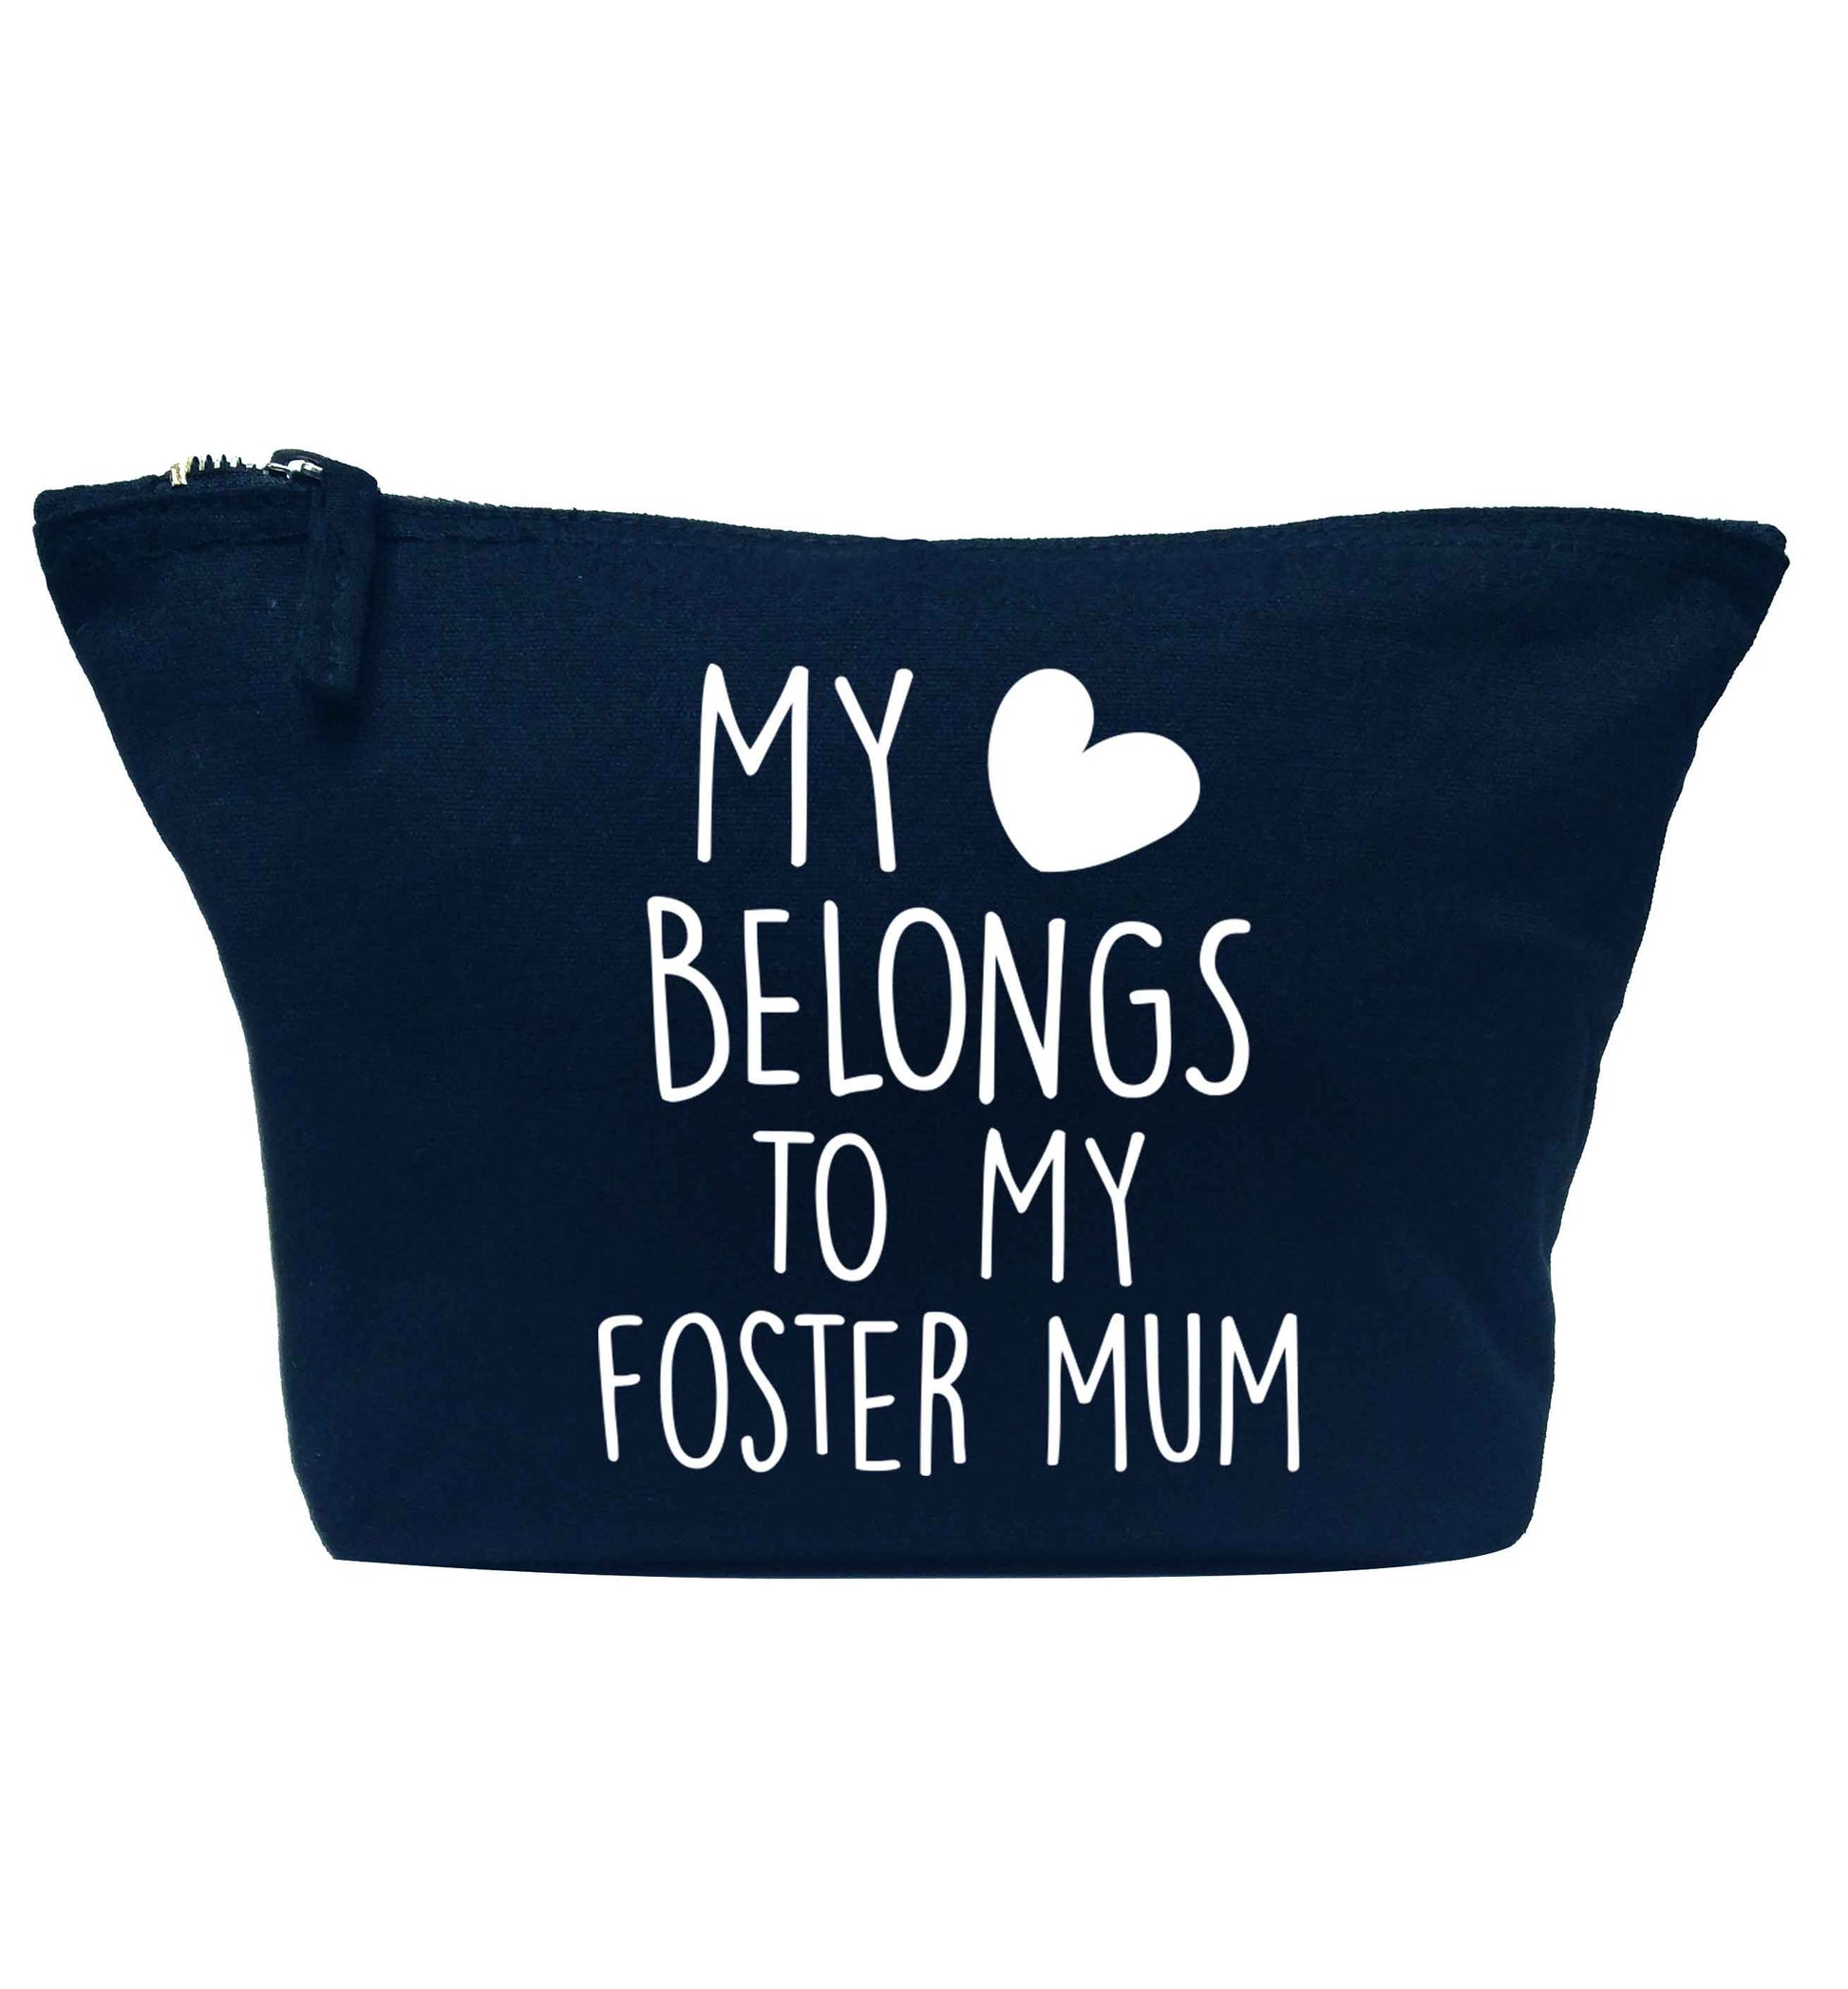 My heart belongs to my foster mum navy makeup bag